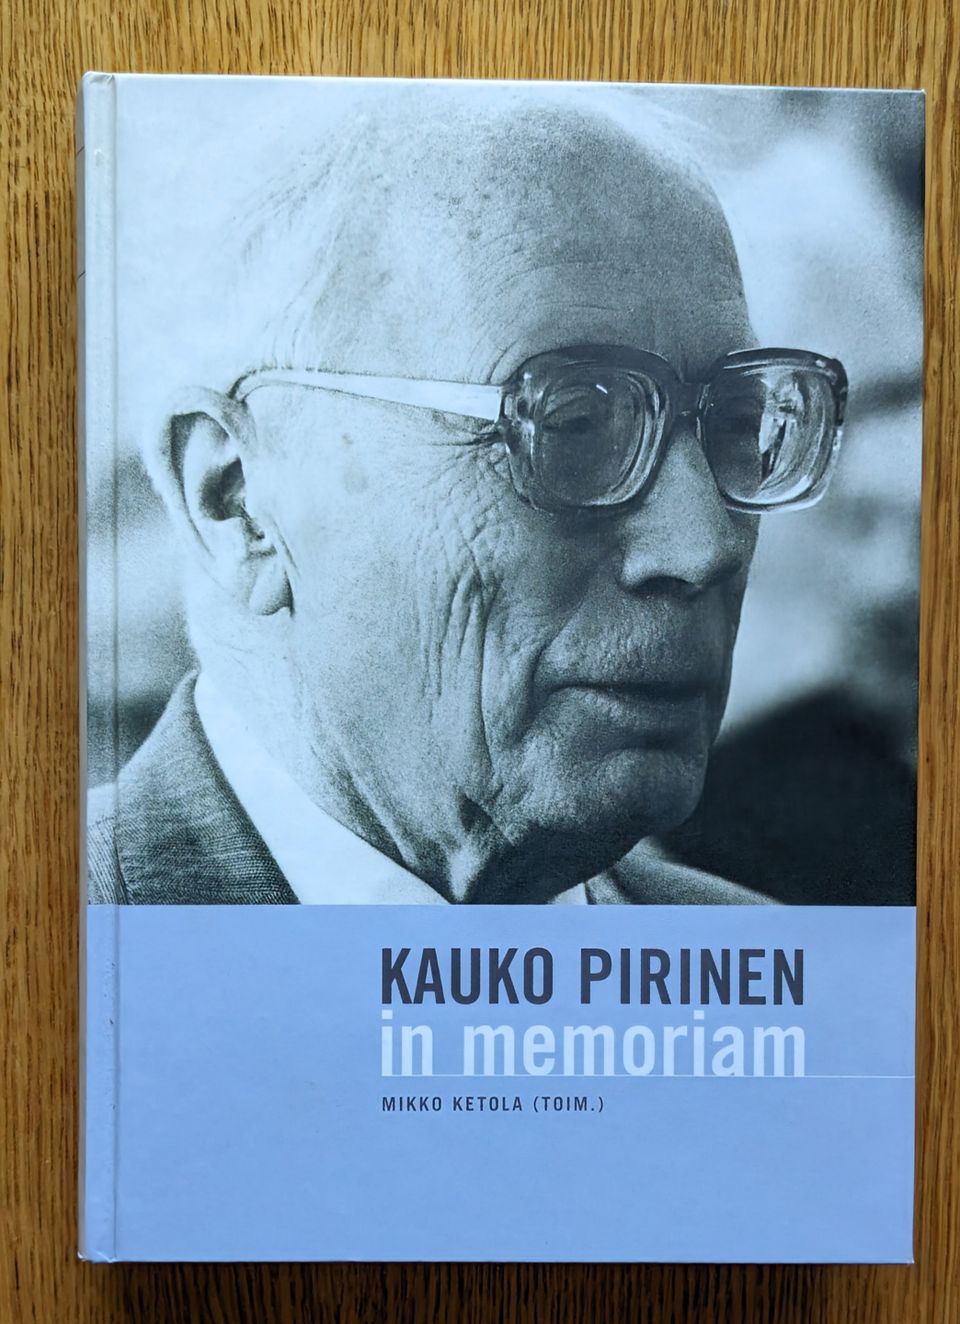 Kauko Pirinen, in memoriam